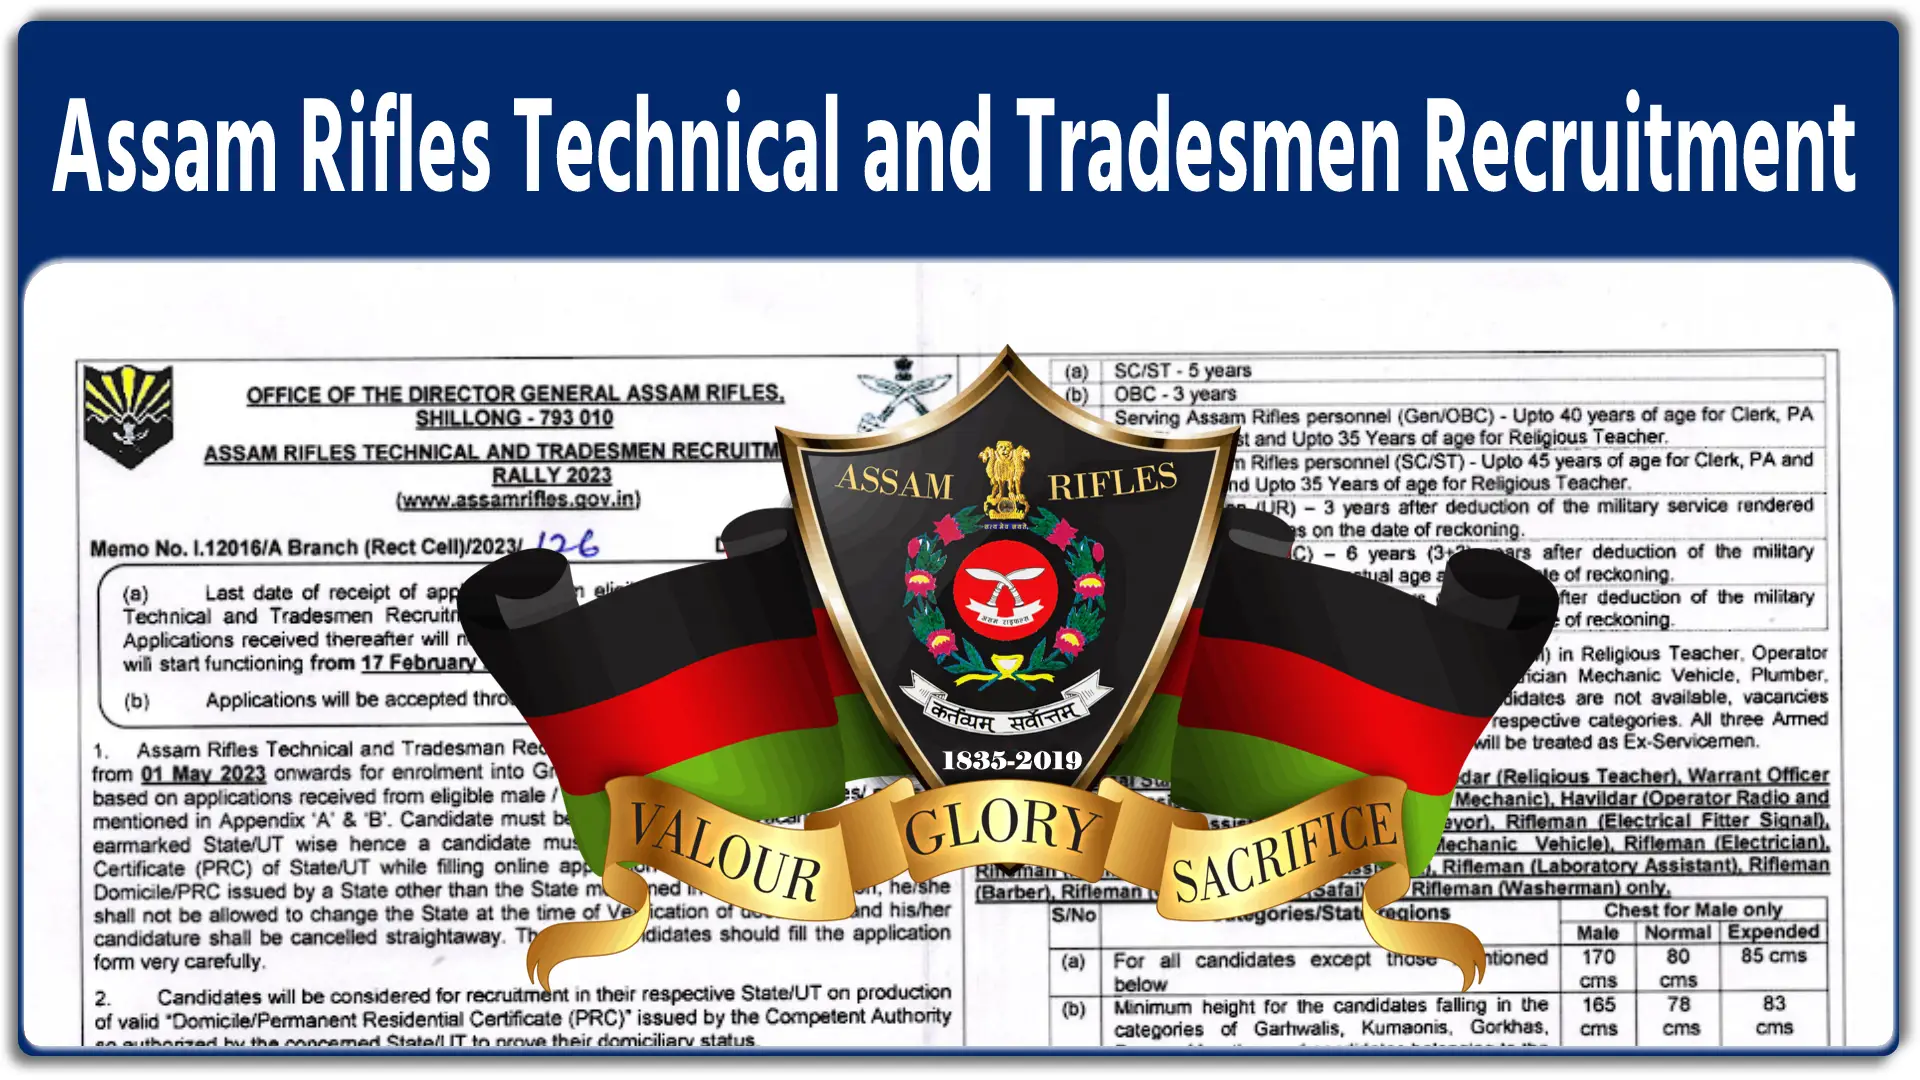 Assam Rifles Technical and Tradesmen Recruitment